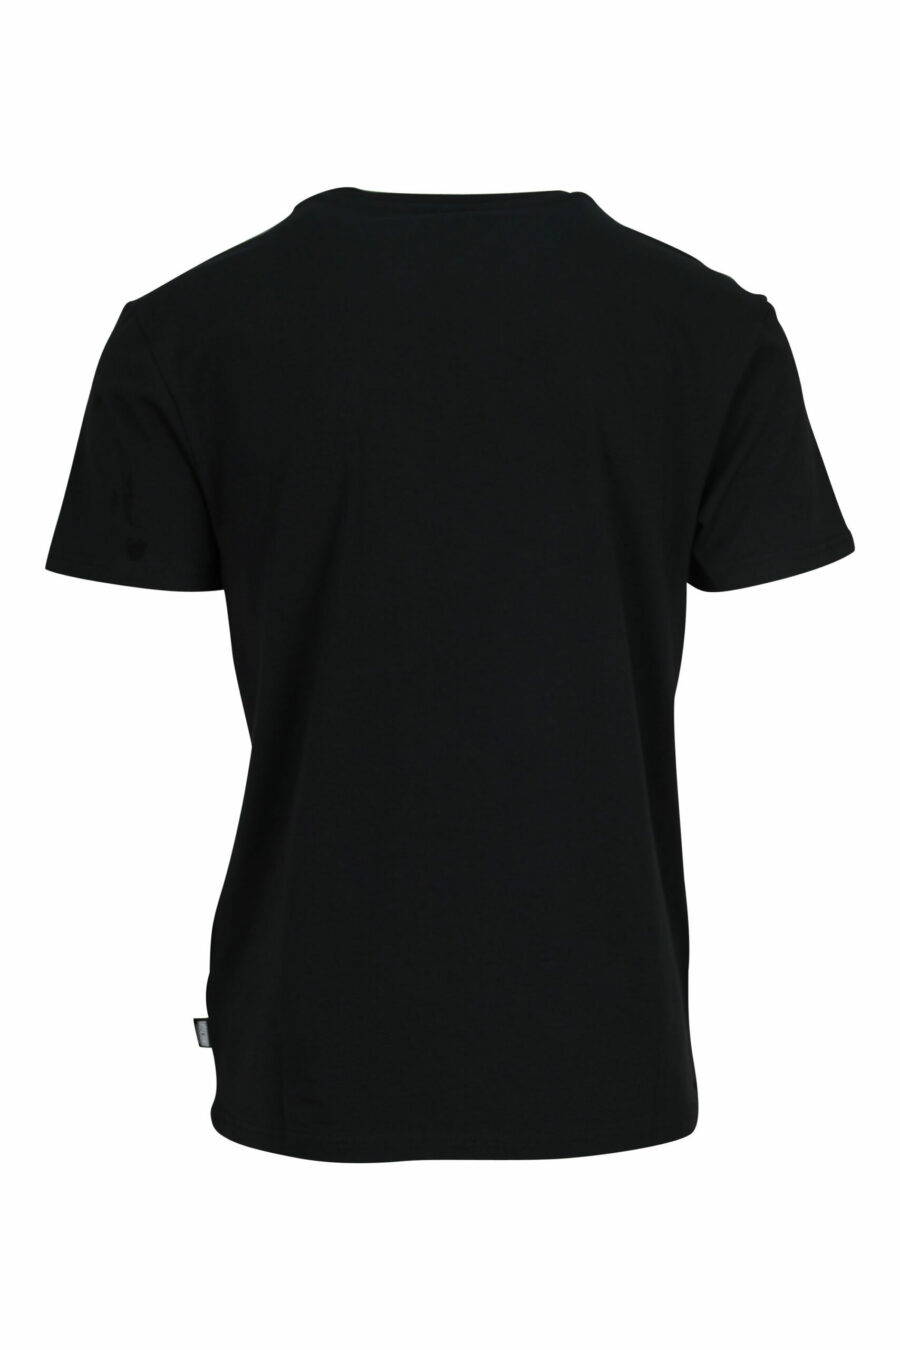 Schwarzes T-Shirt mit Mini-Logo Bär "underbear" in weißem Gummi - 667113602639 1 skaliert